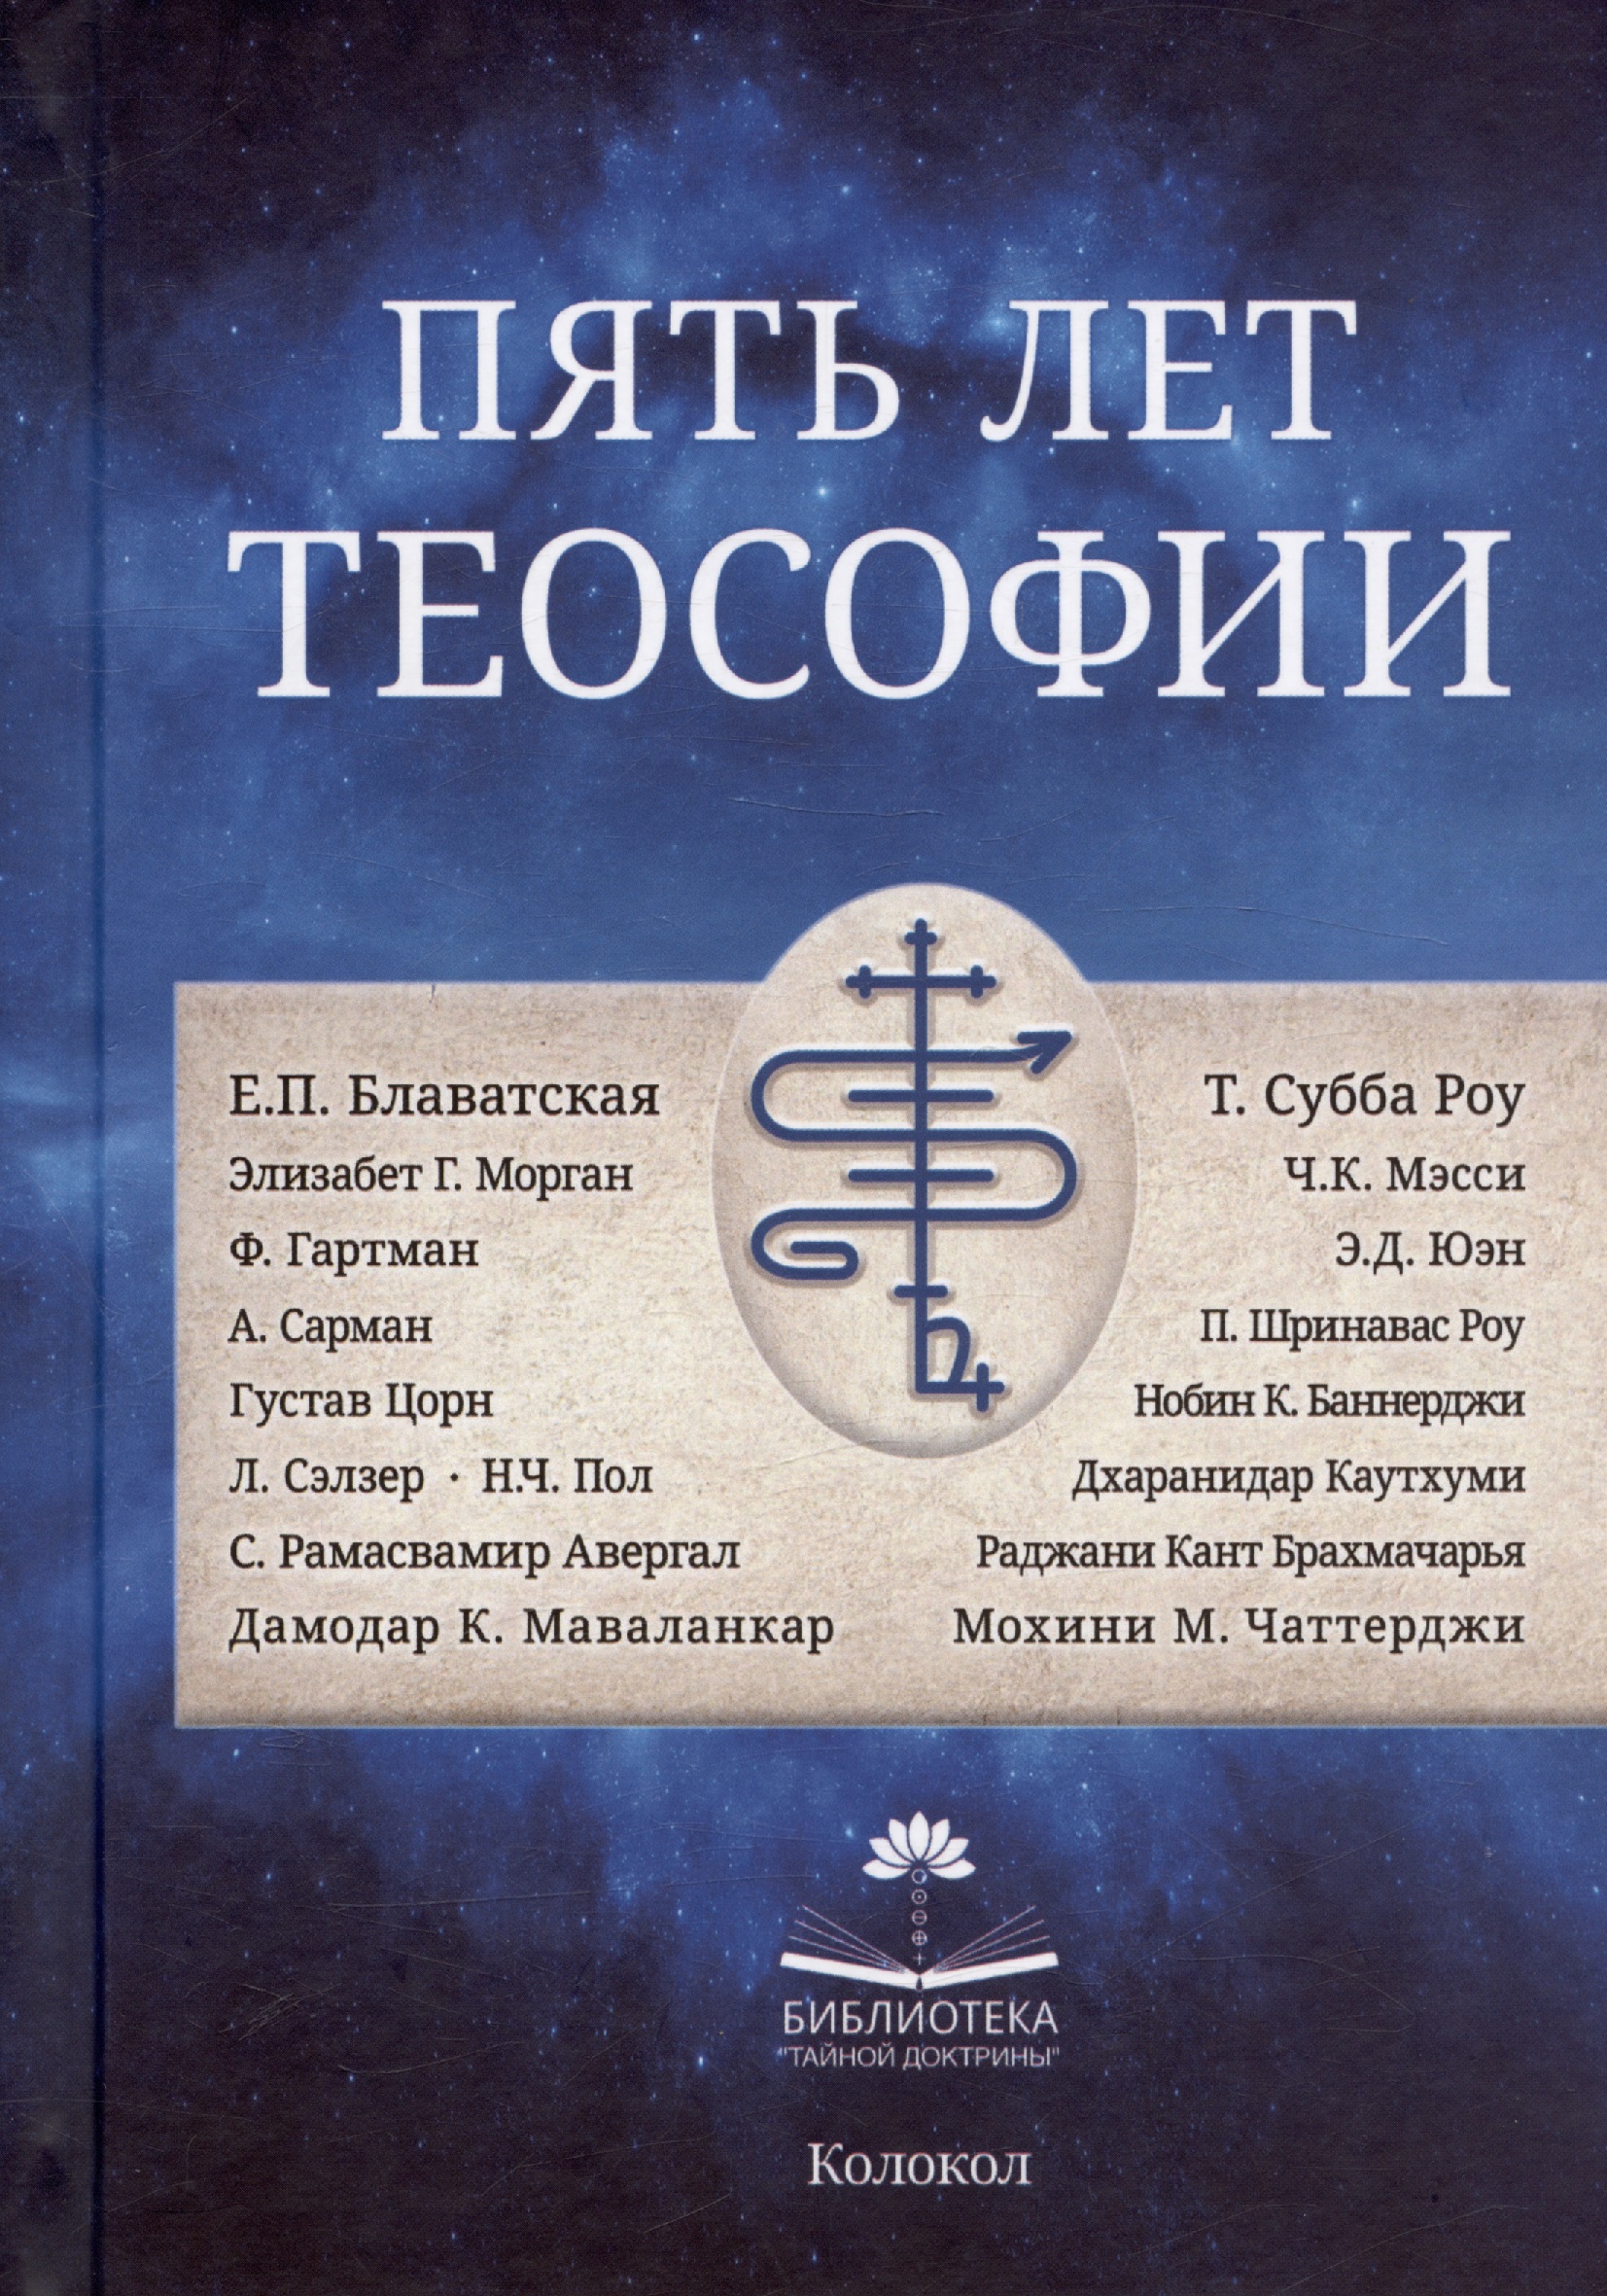 Пять лет теософии вестник теософии сборник первый 2008 2010